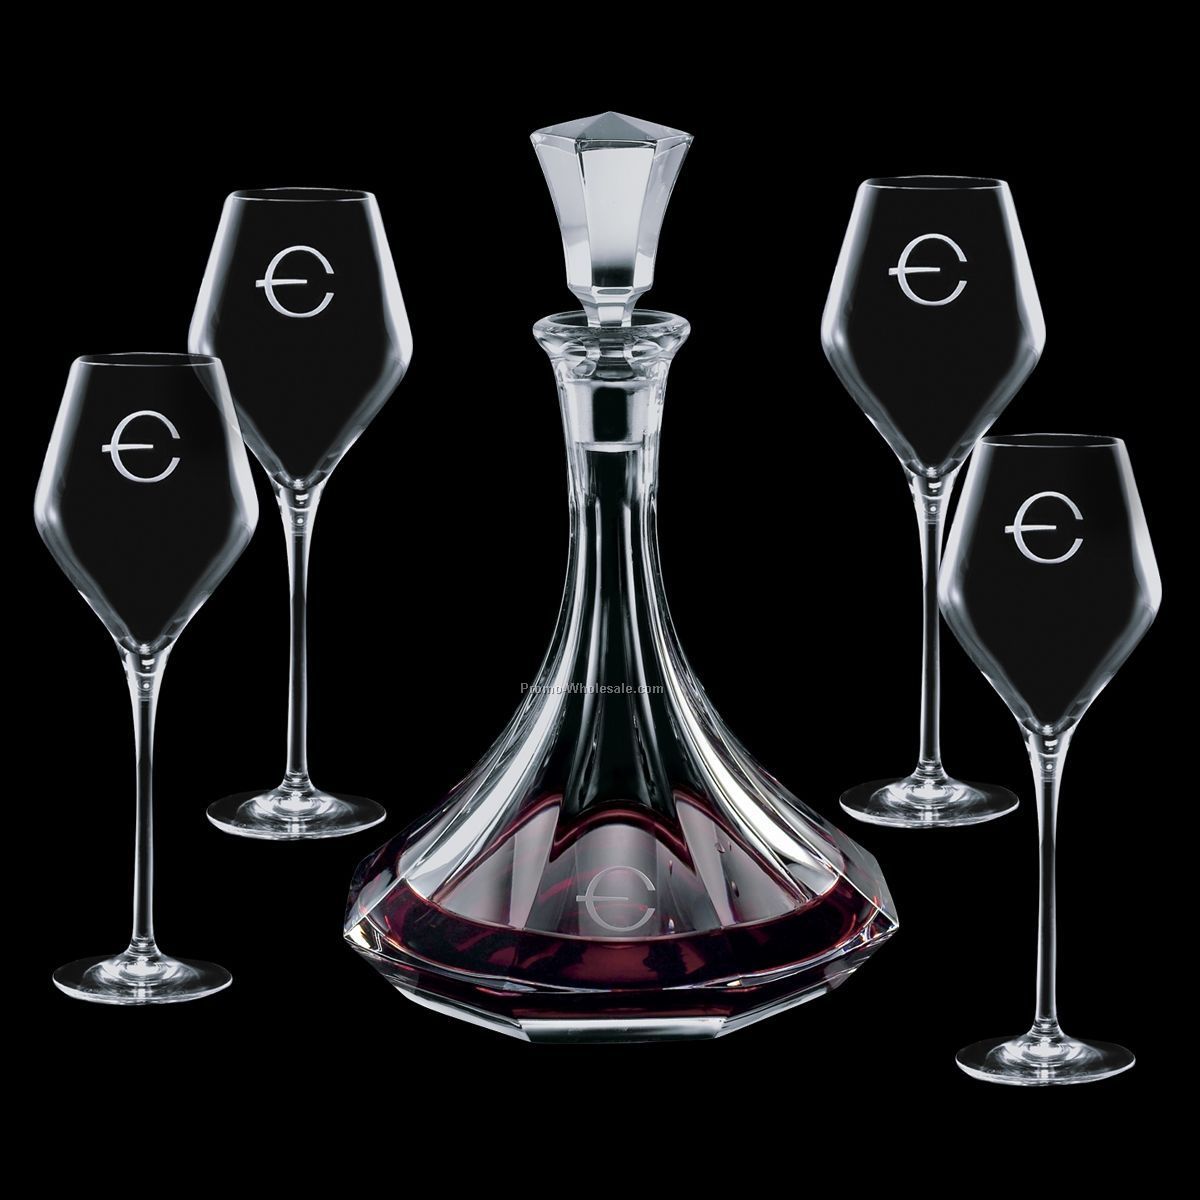 Europa Wine Decanter & 4 Wine Glasses